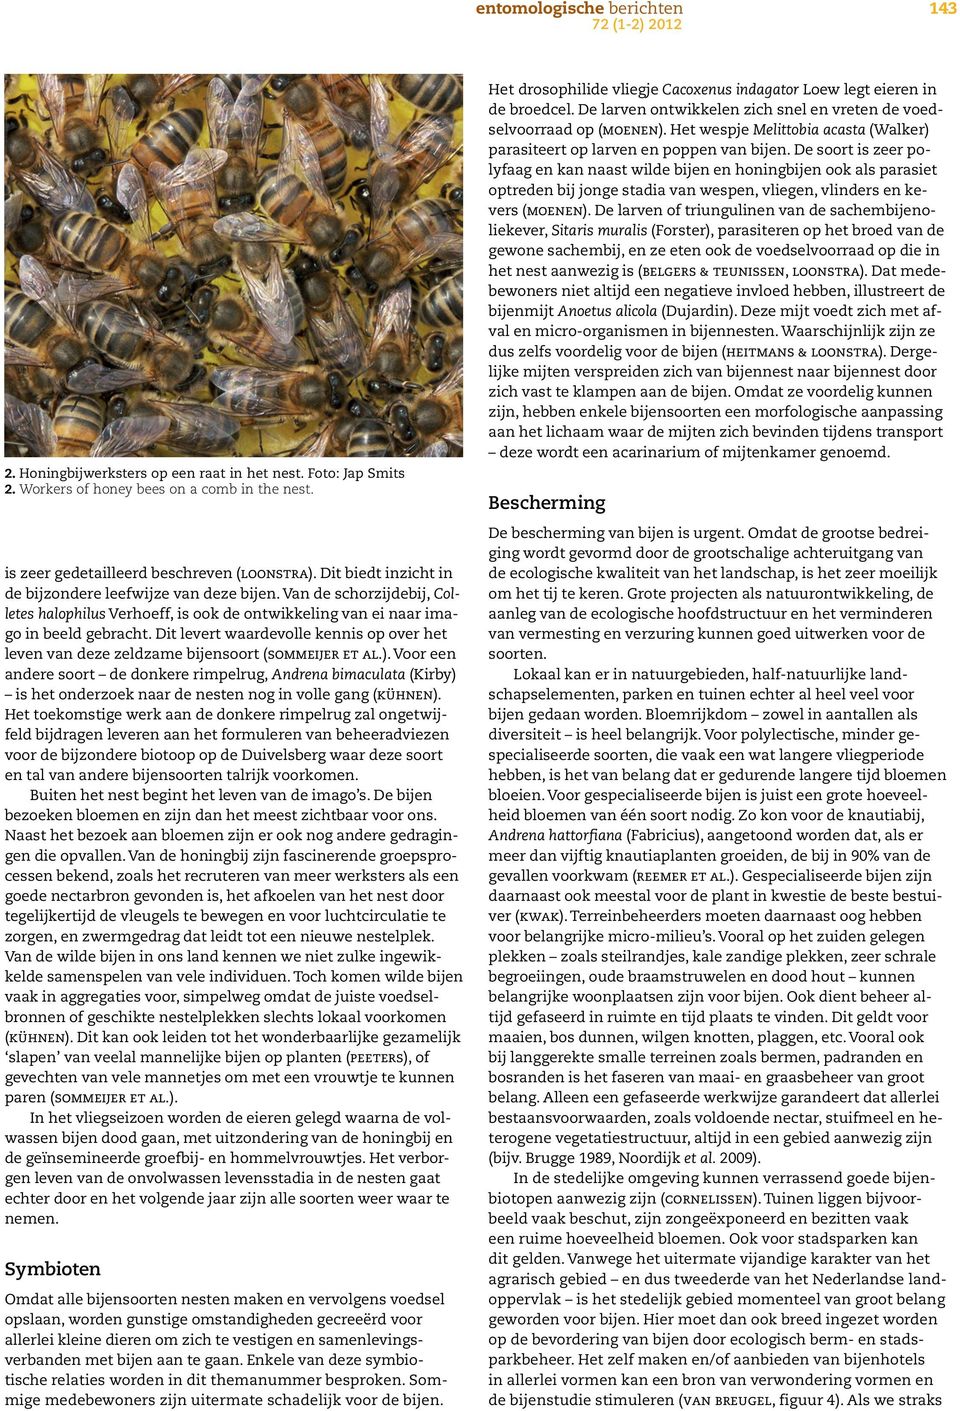 Dit levert waardevolle kennis op over het leven van deze zeldzame bijensoort (sommeijer et al.).